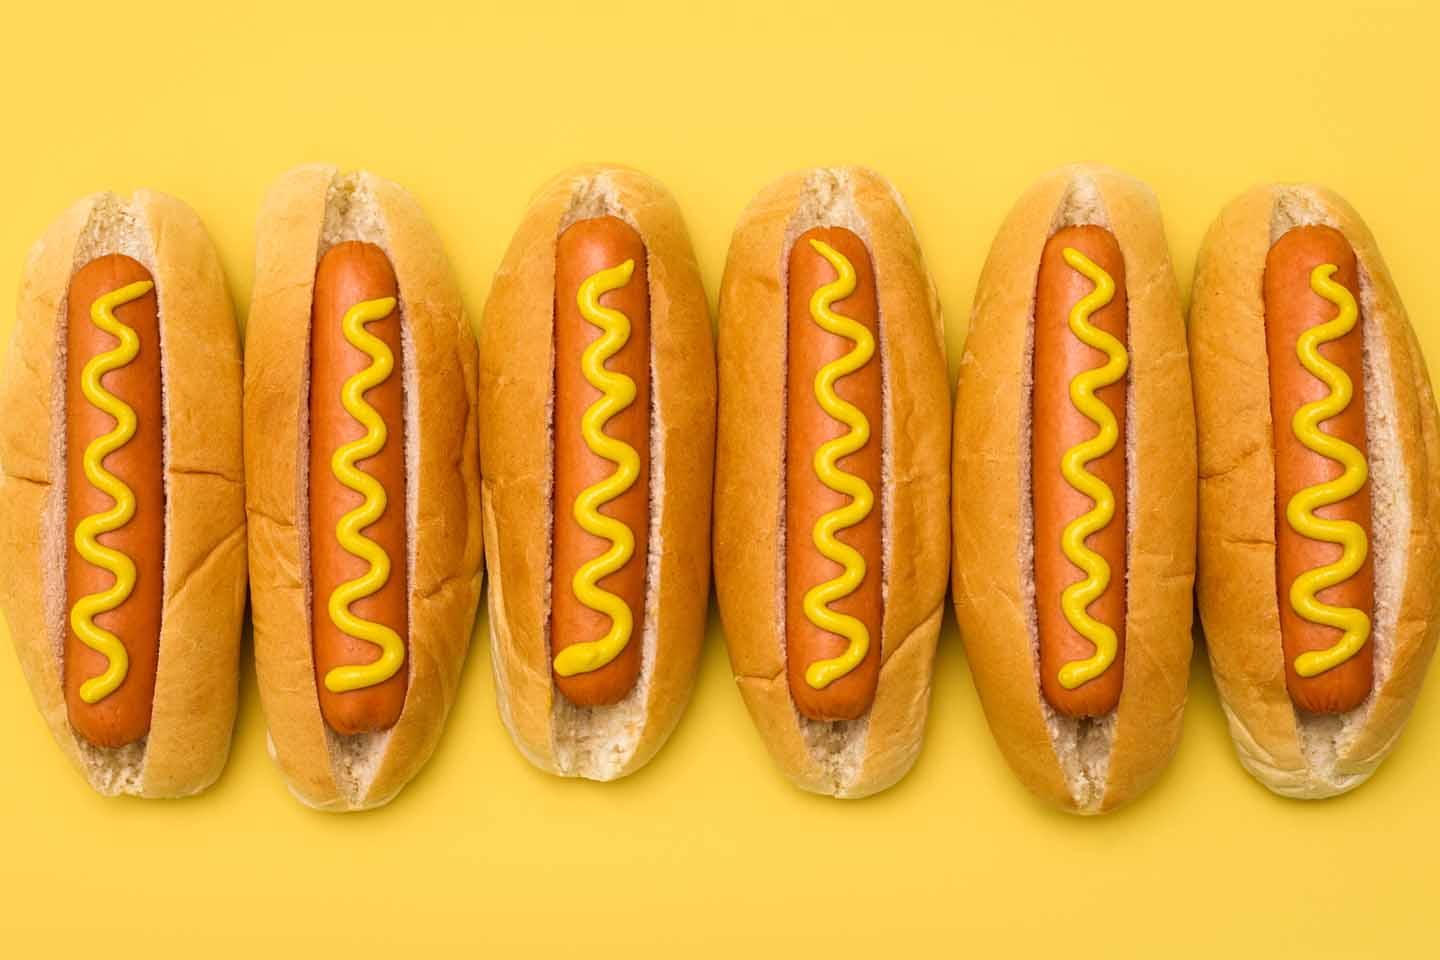 Hotdogs: Würstchen im Brötchen mit Senf darauf liegen nebeneinander.